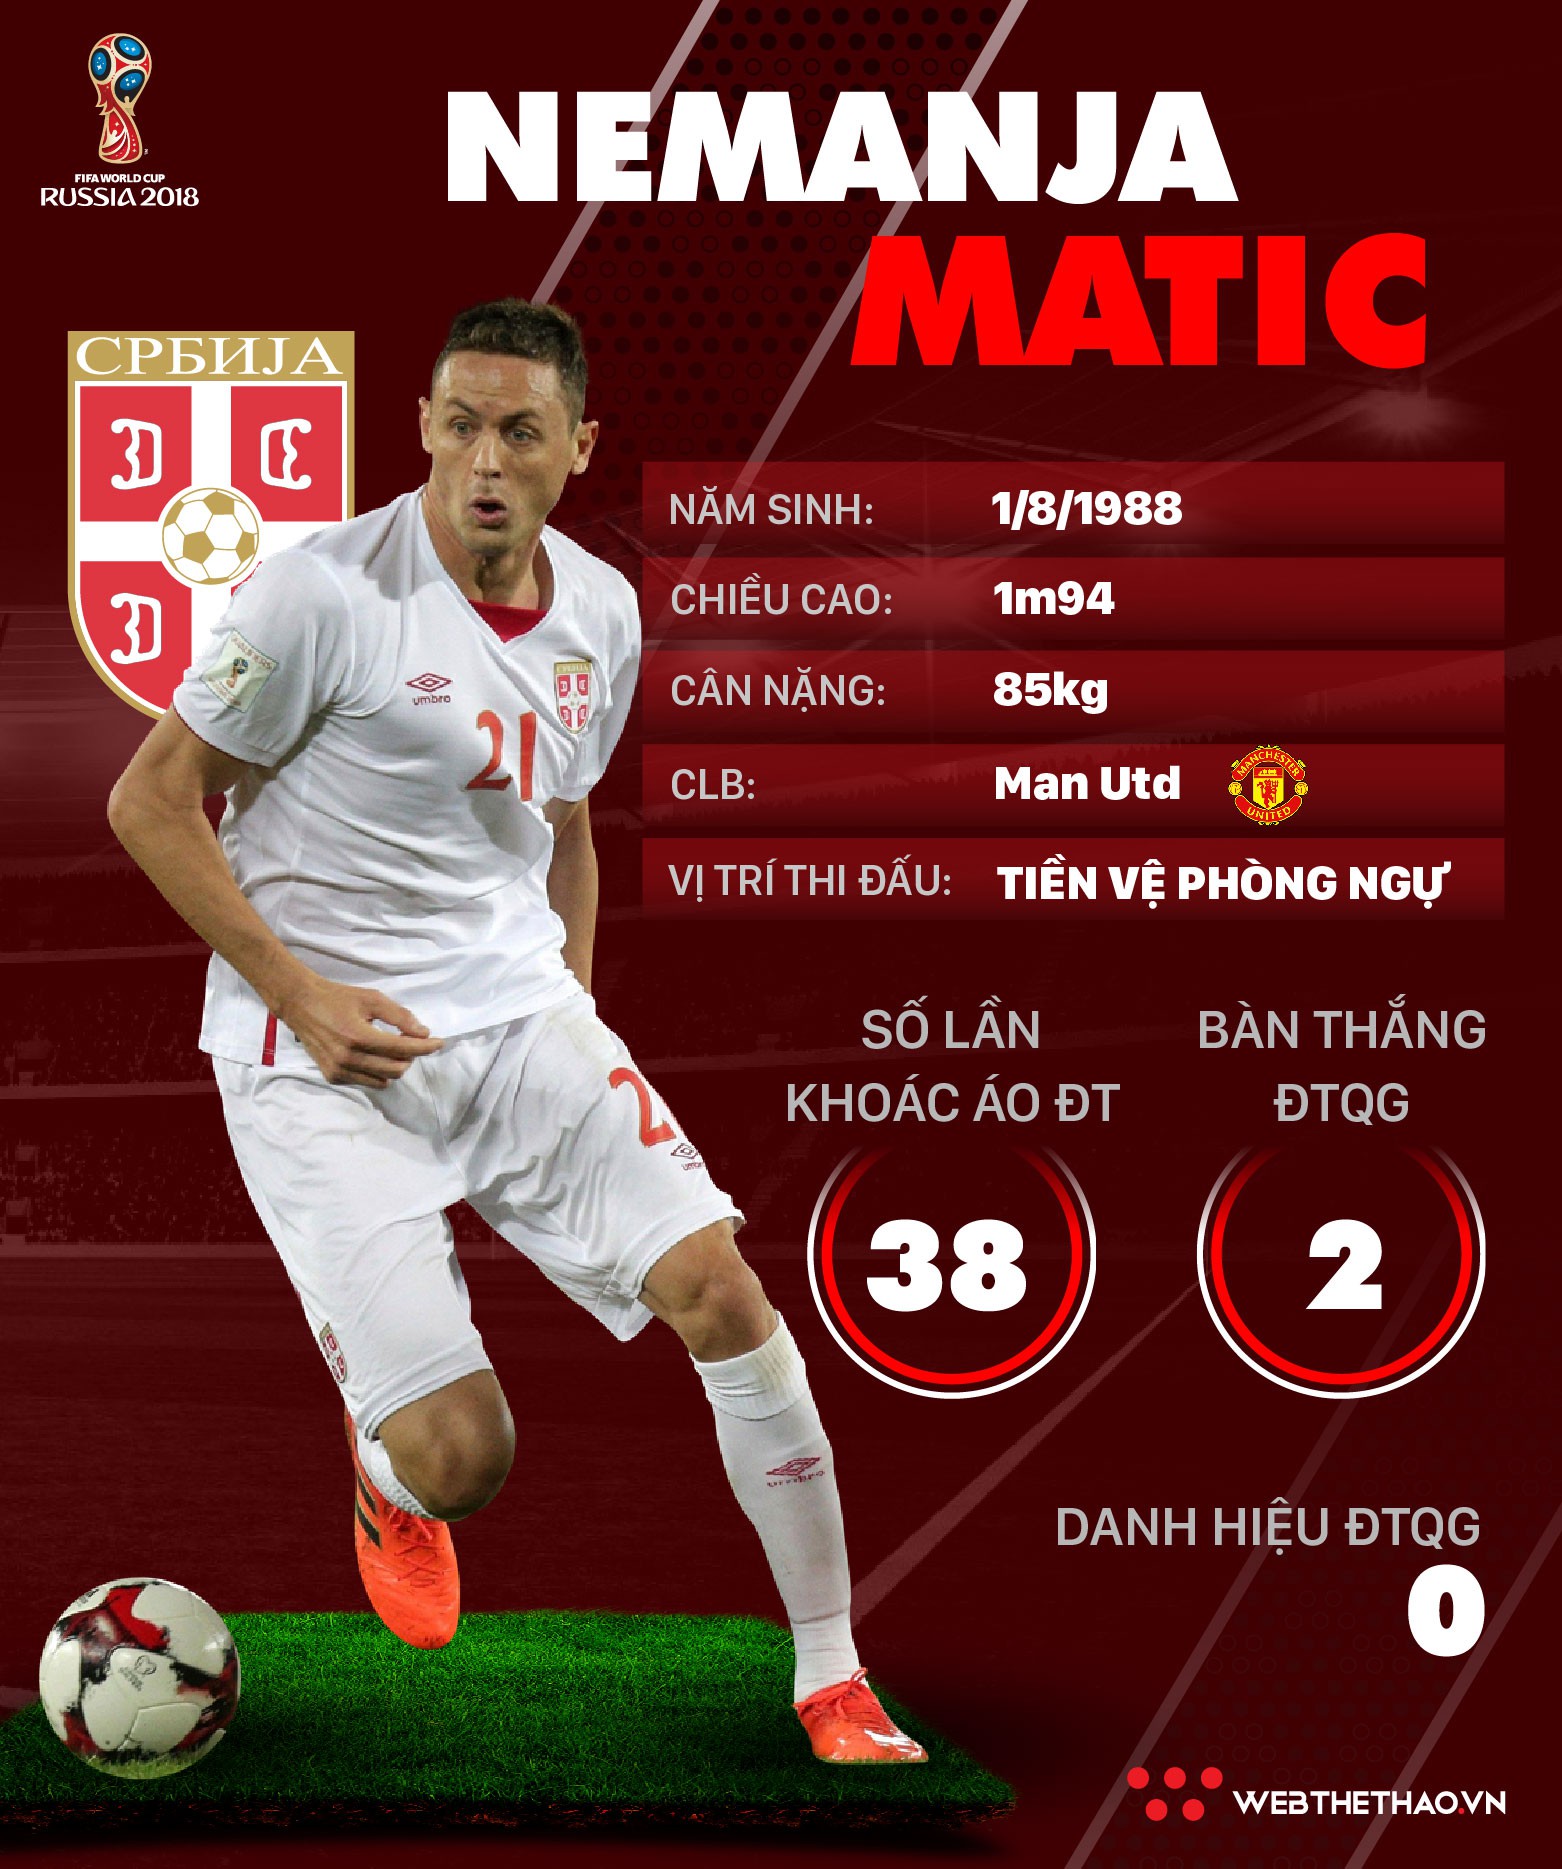 Thông tin cầu thủ Nemanja Matic của ĐT Serbia dự World Cup 2018 - Ảnh 1.